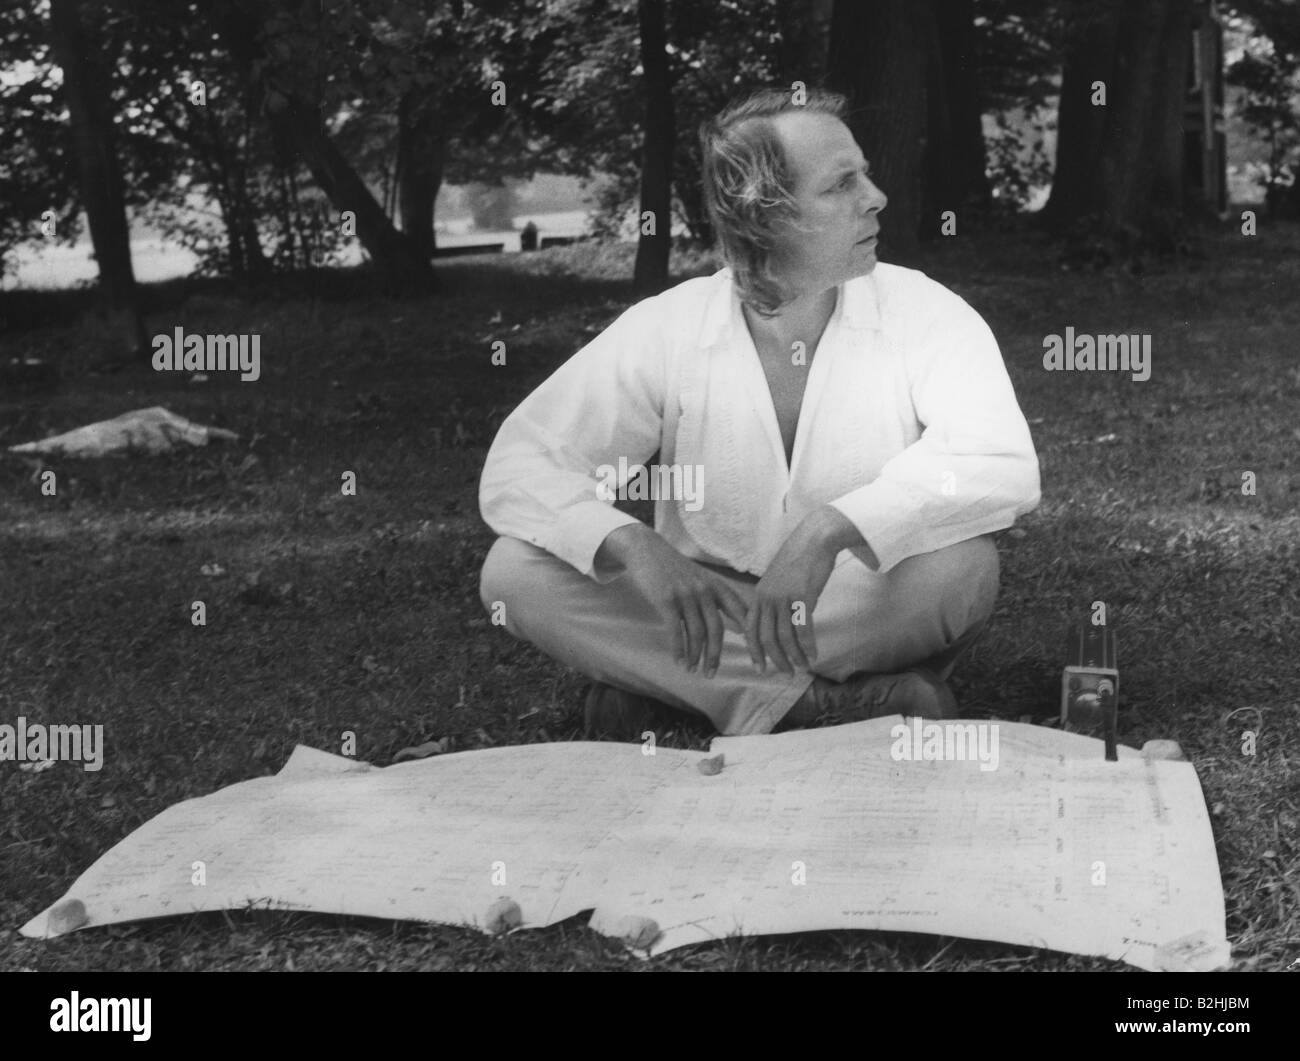 Stockhausen, Karlheinz, 22.8.1928 - 5.12.2007, German composer, full length, 1970s, Stock Photo